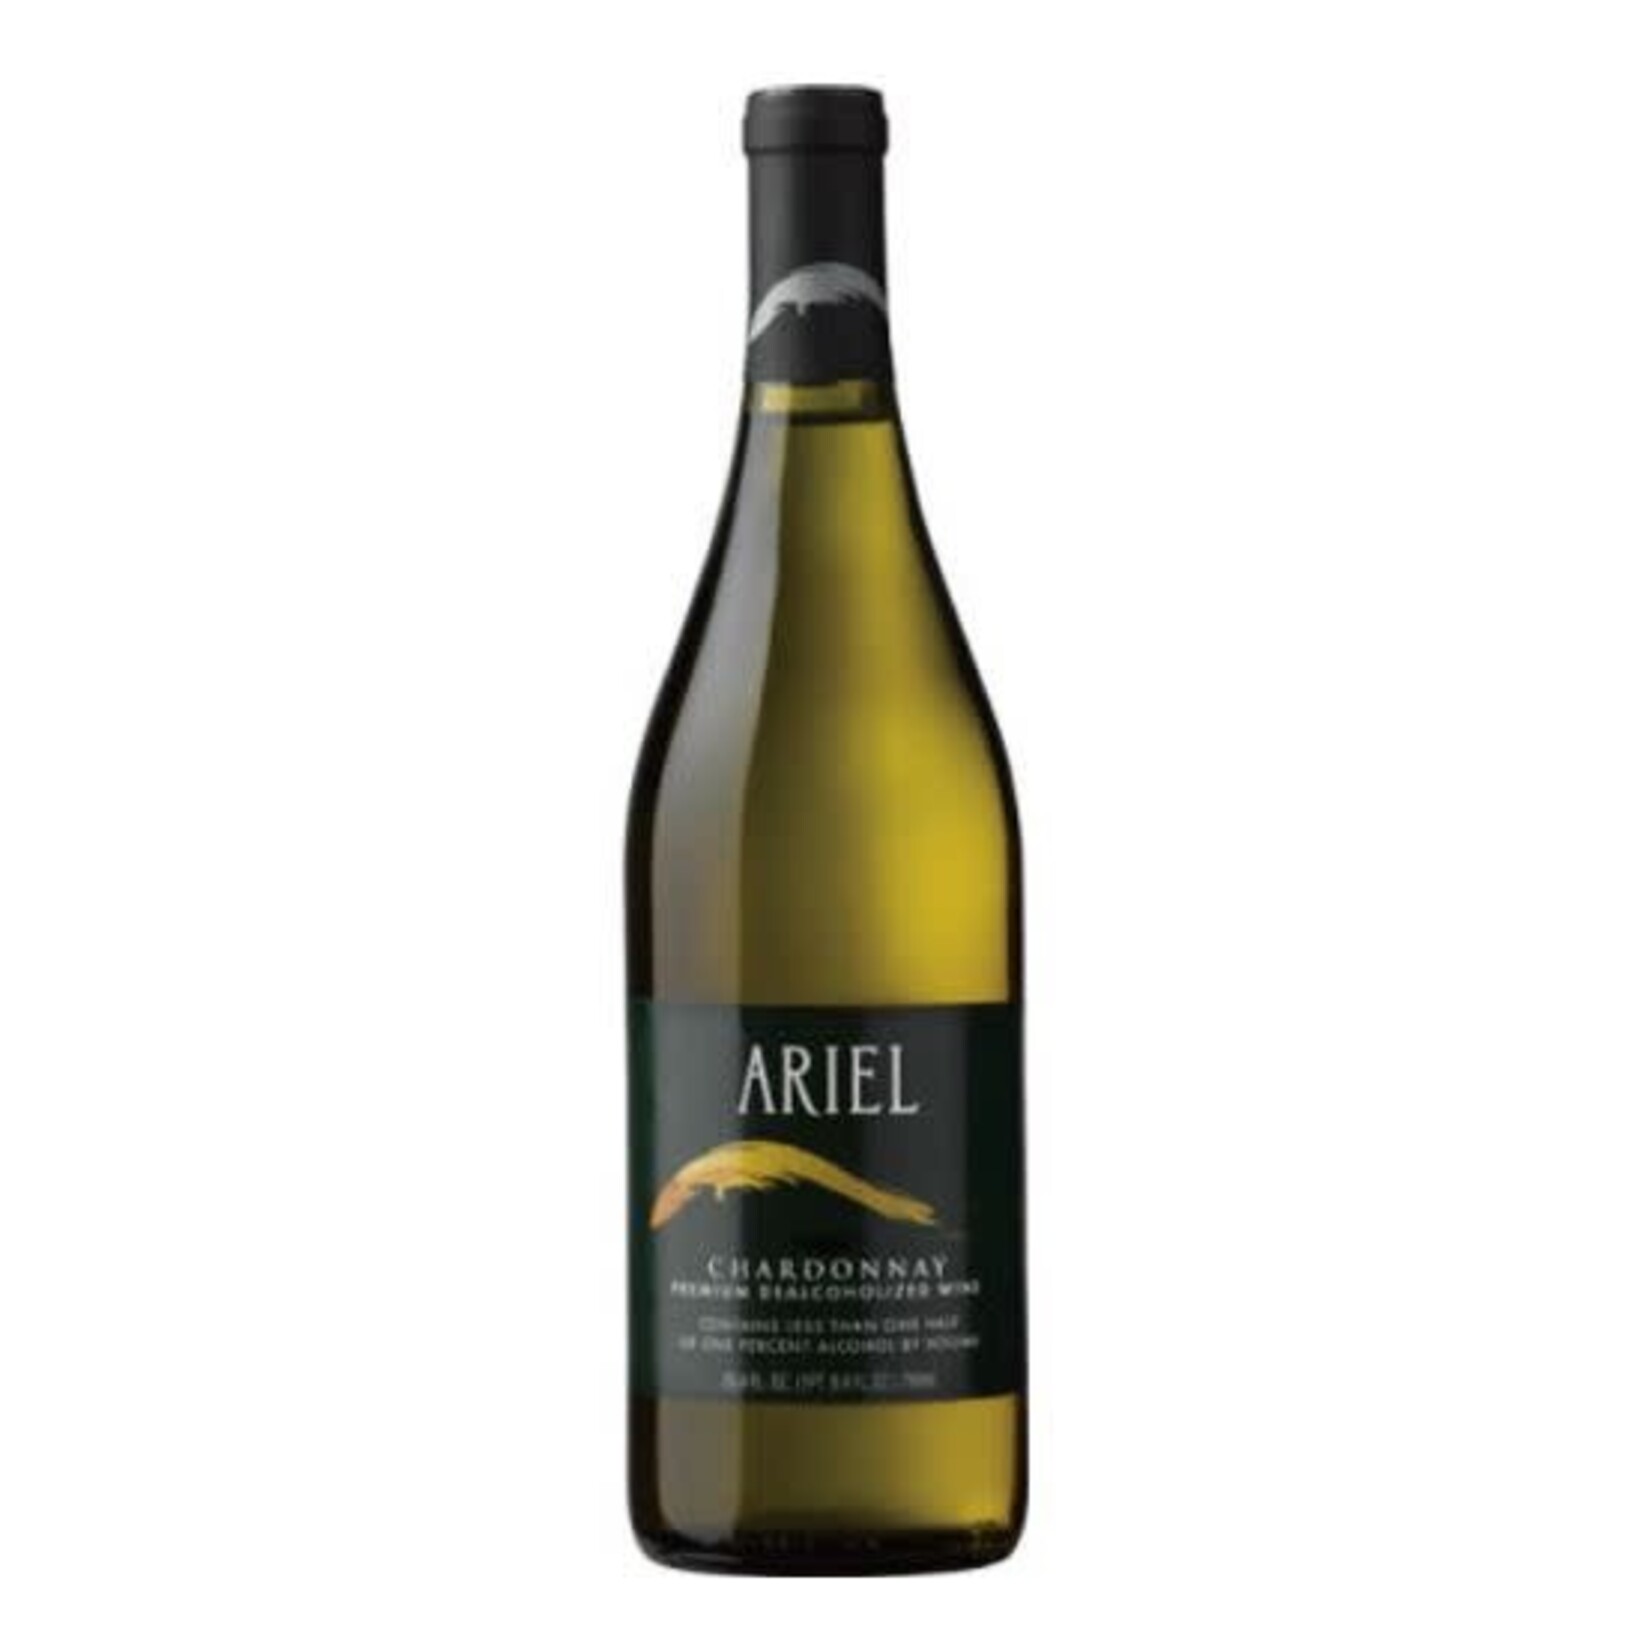 Ariel Ariel Chardonnay Premium Dealcoholized Wine 2021 Less than .05%